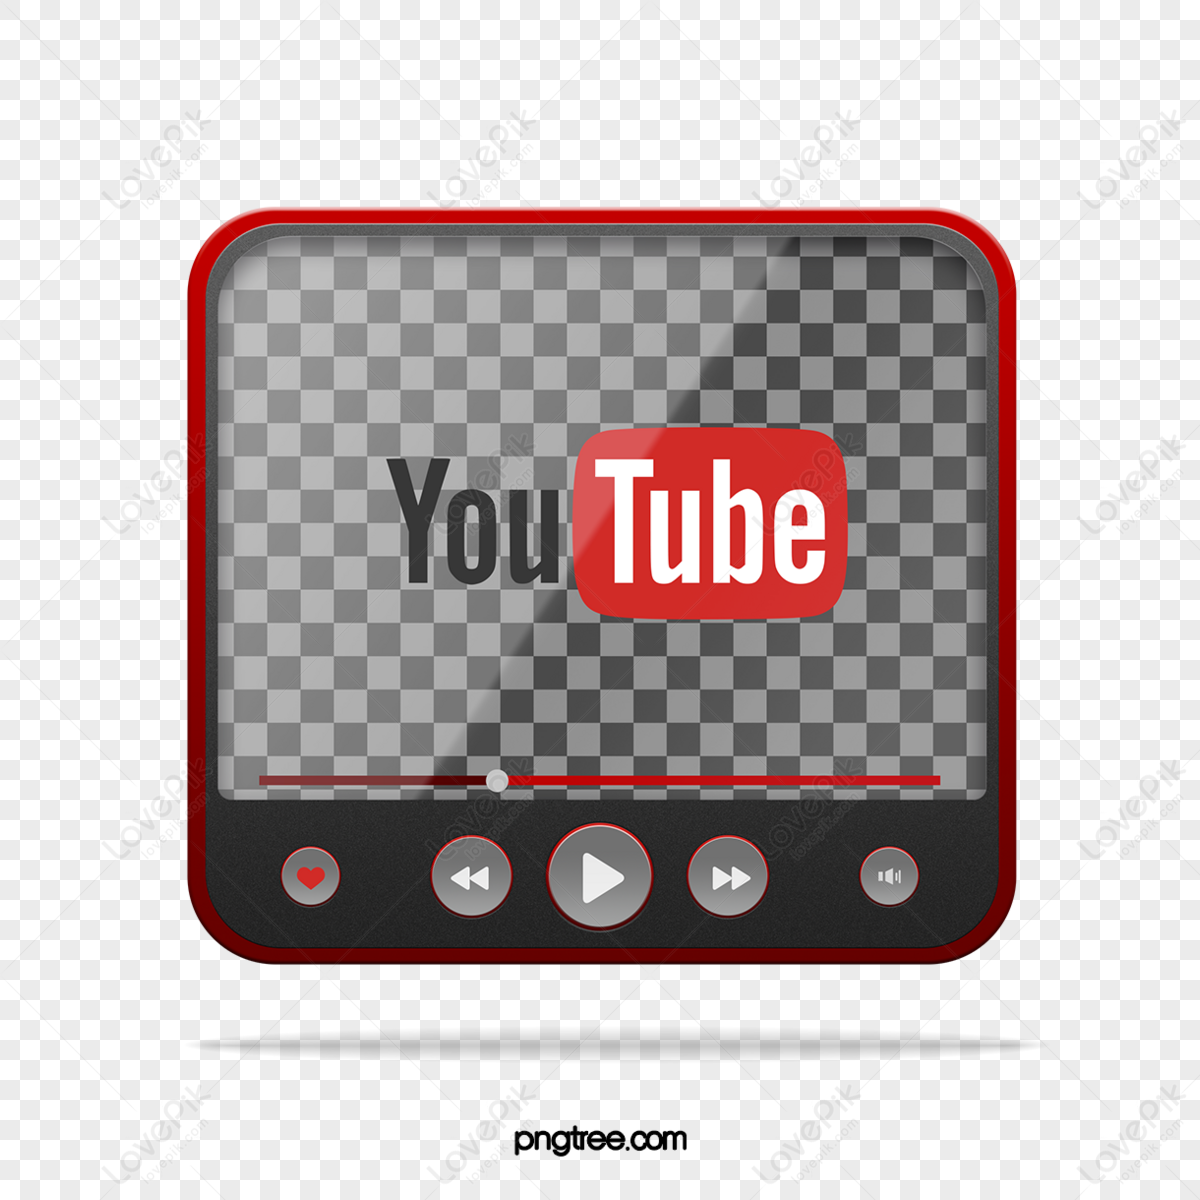 Download Service Youtube Hosting Video Logo Film HQ PNG Image | FreePNGImg